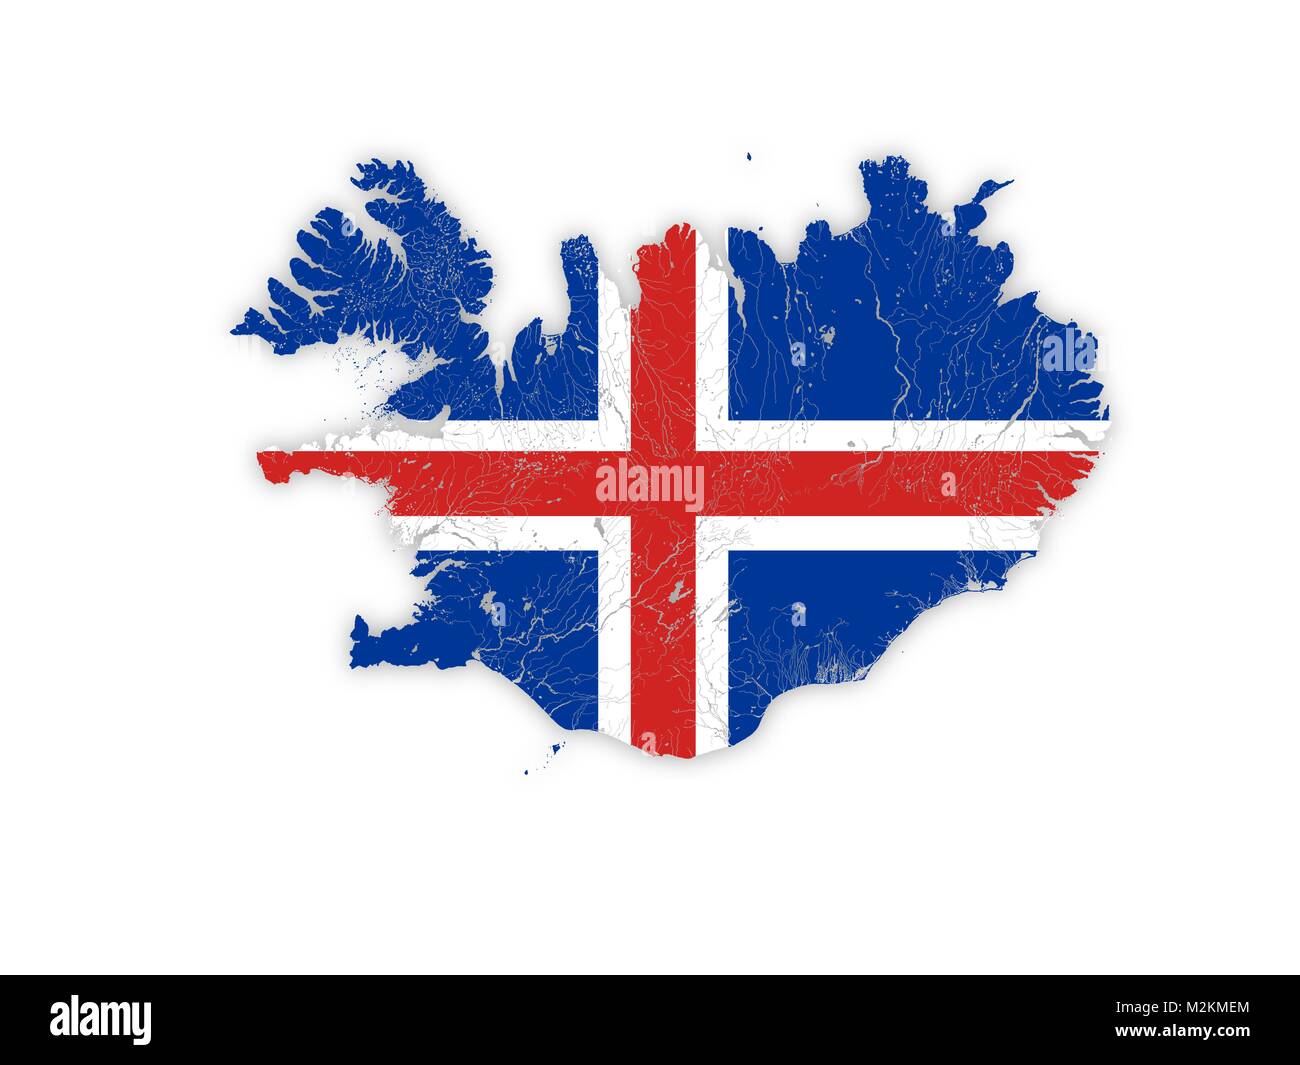 Mappa di Islanda con laghi e fiumi in colori delle bandiere nazionali. Si prega di guardare le mie altre immagini della serie cartografica Illustrazione Vettoriale